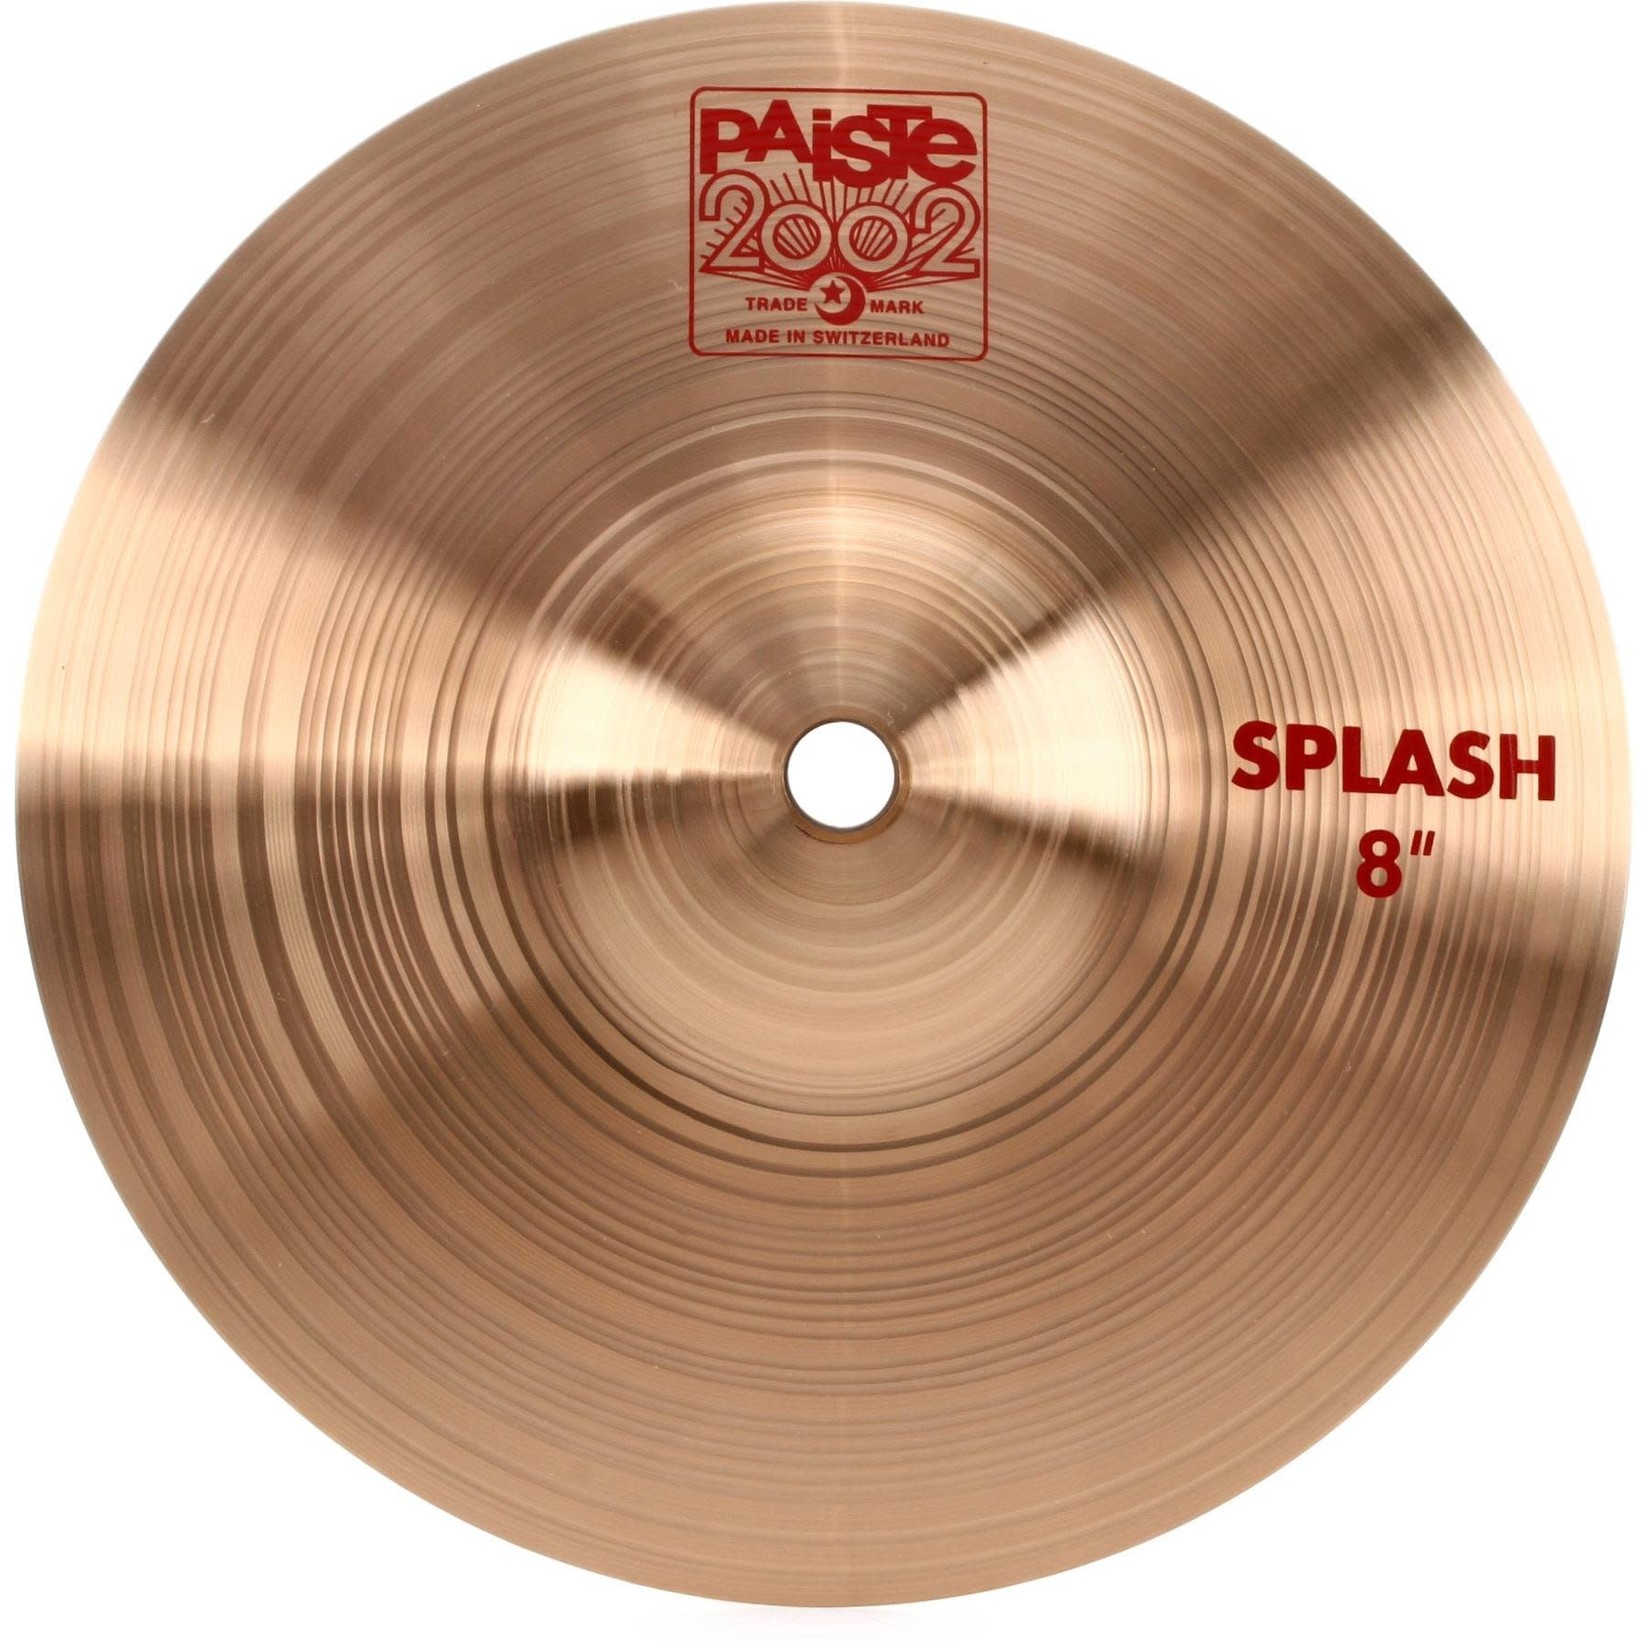 Paiste Paiste 2002 8" Splash Cymbal